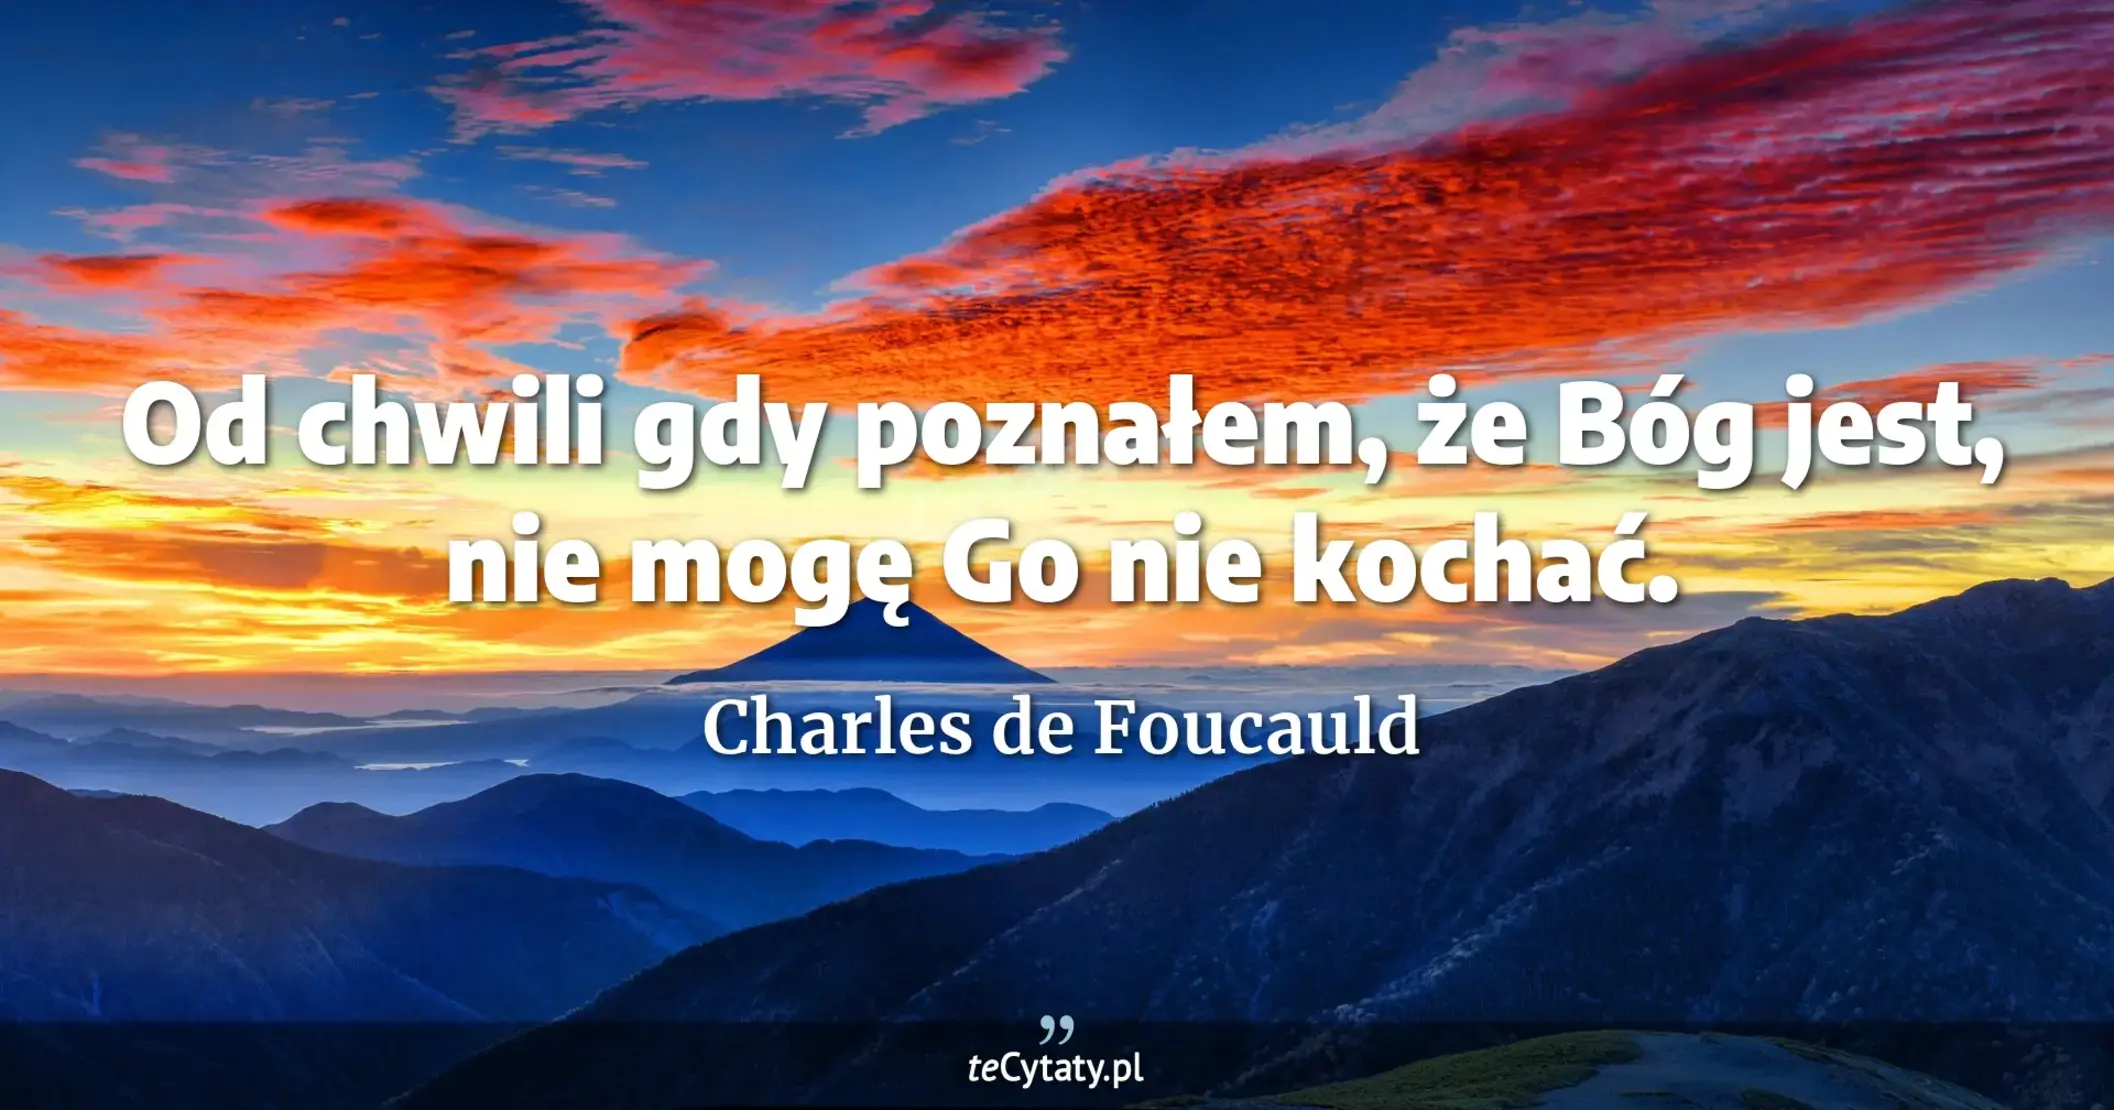 Od chwili gdy poznałem, że Bóg jest, nie mogę Go nie kochać. - Charles de Foucauld